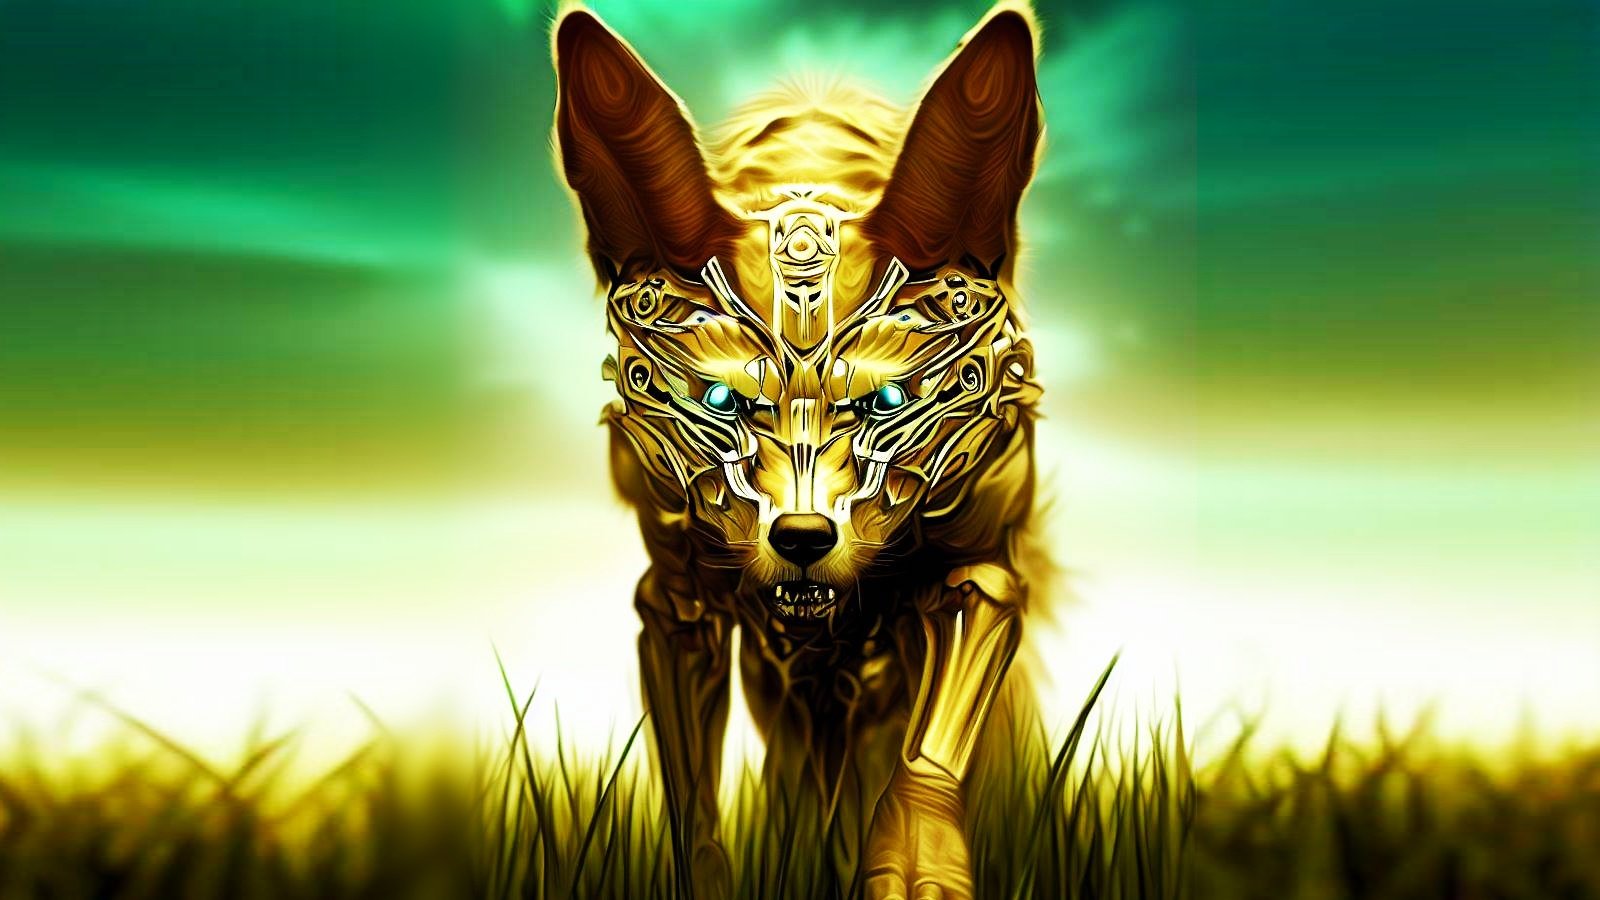 A golden jackal in the grass